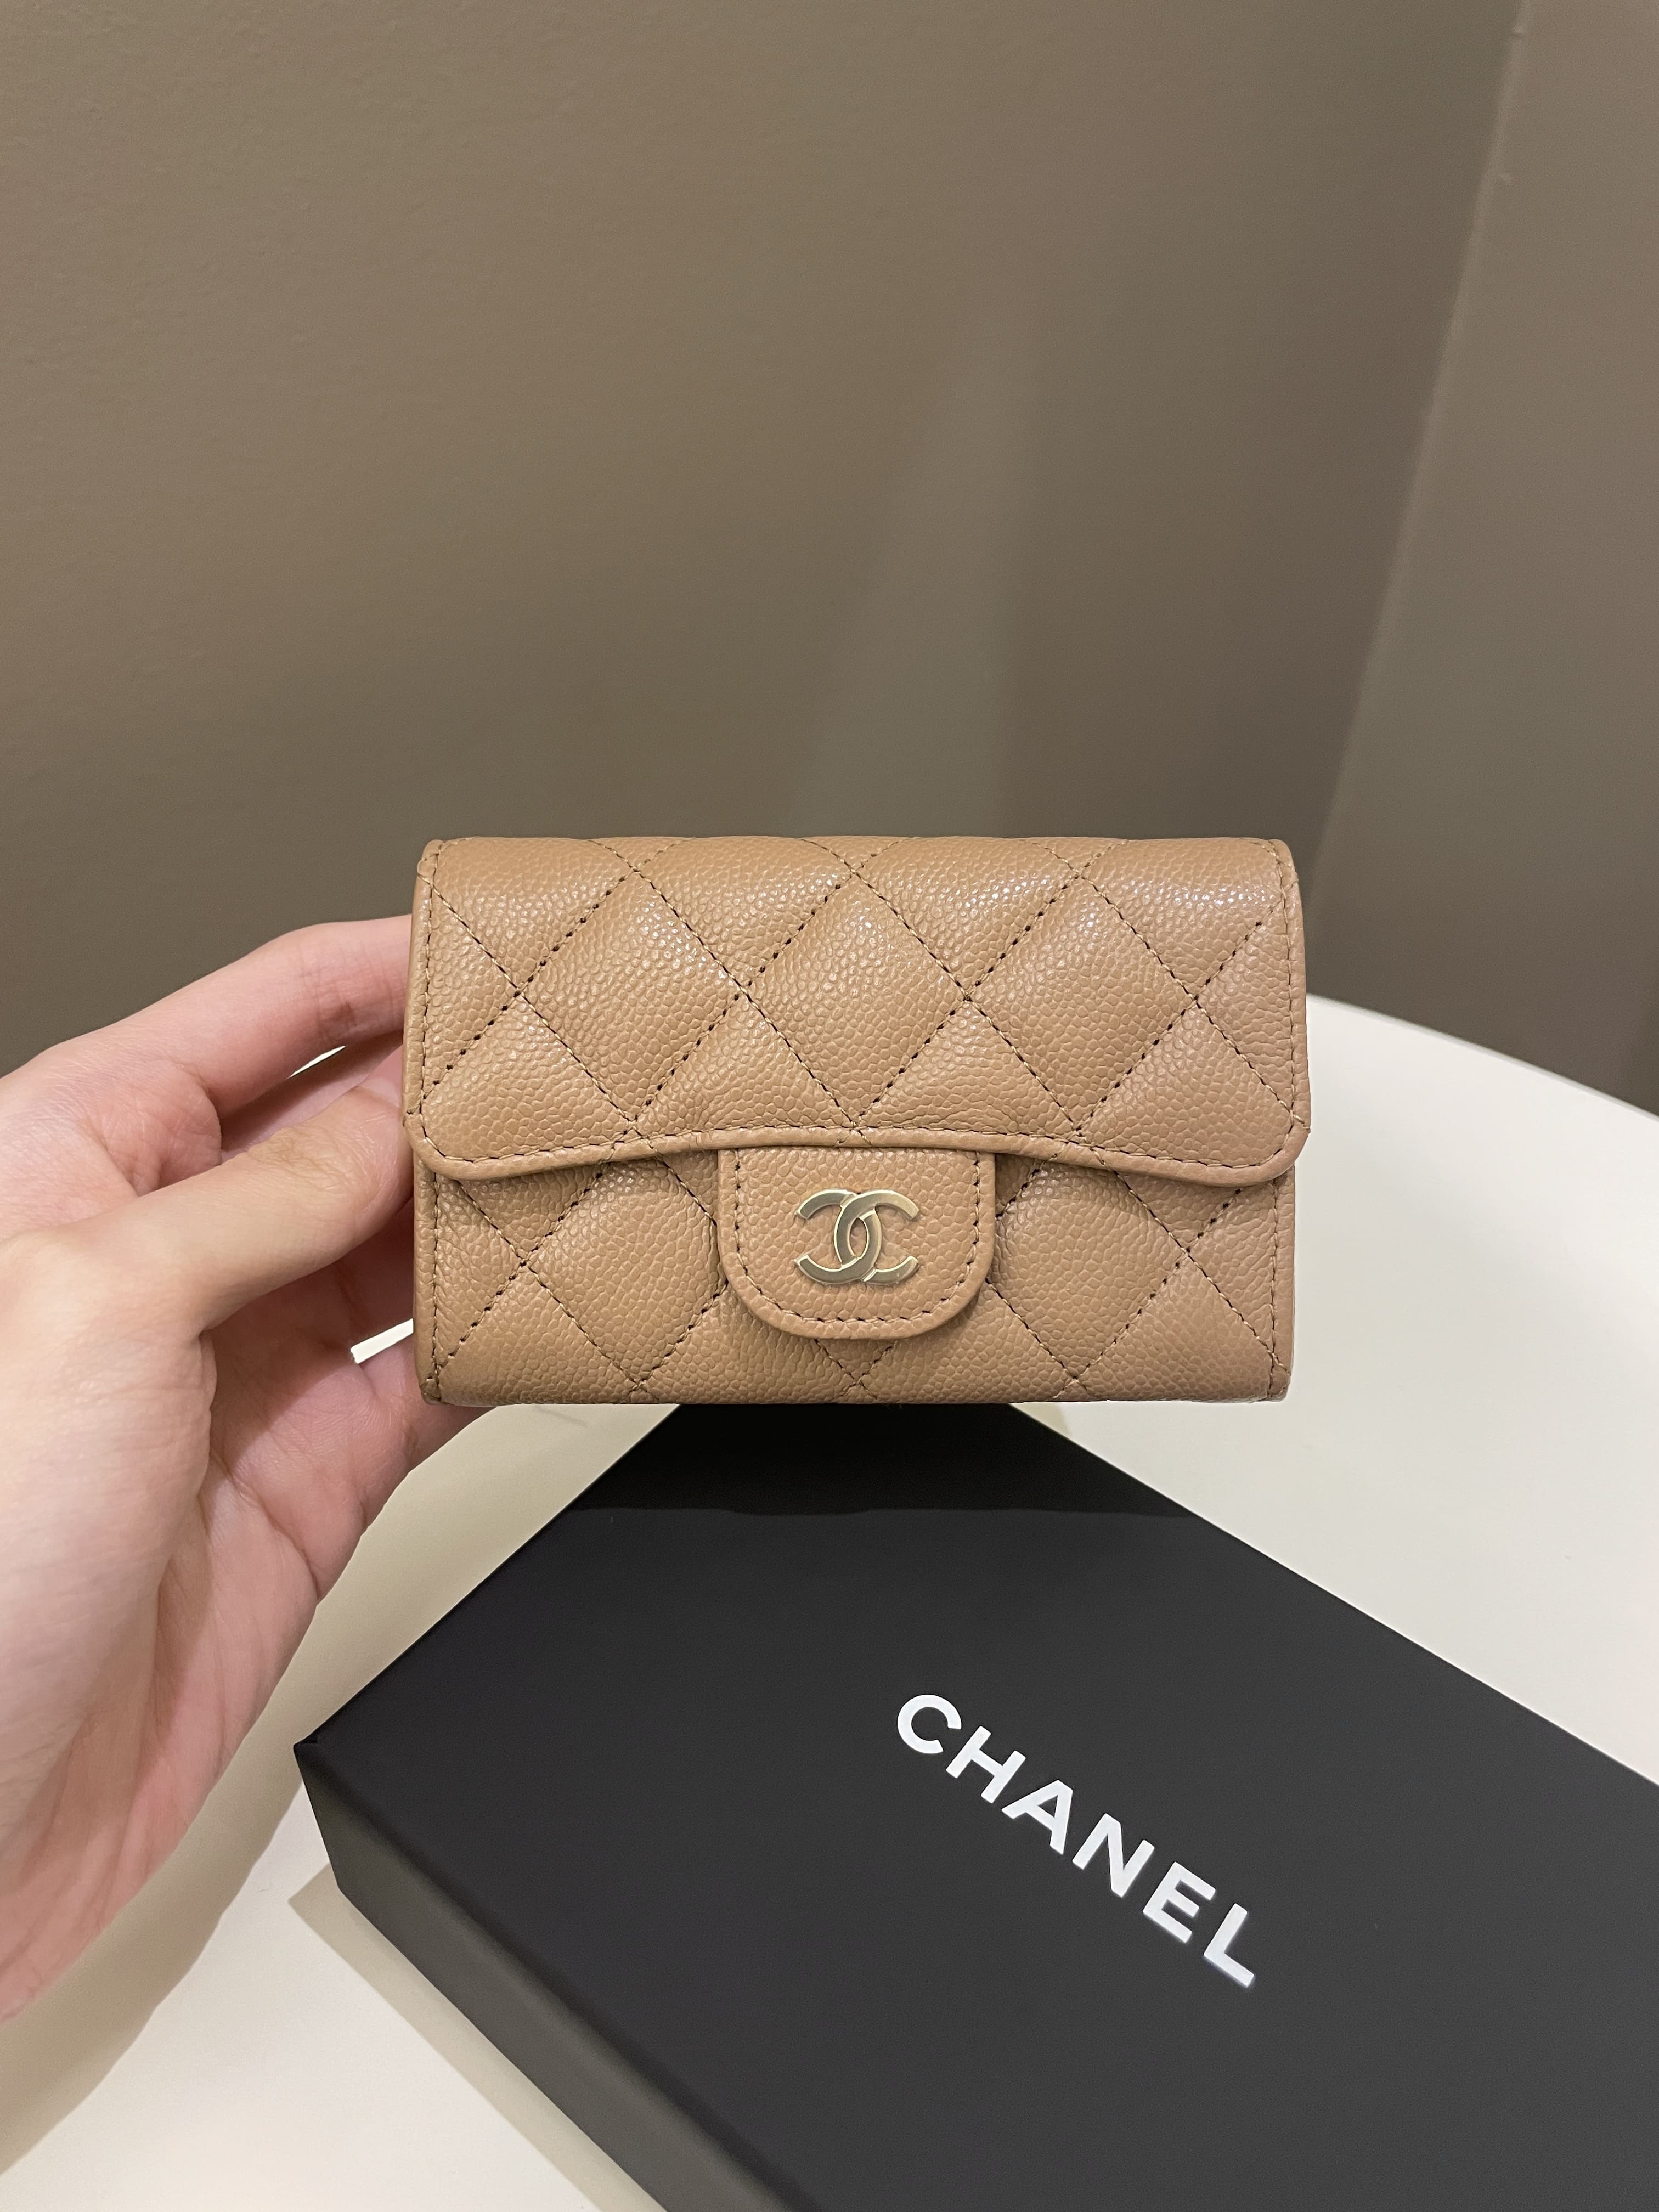 NIB 100%AUTH Chanel 22C Beige Clair Caviar Card Holder Belt Bag